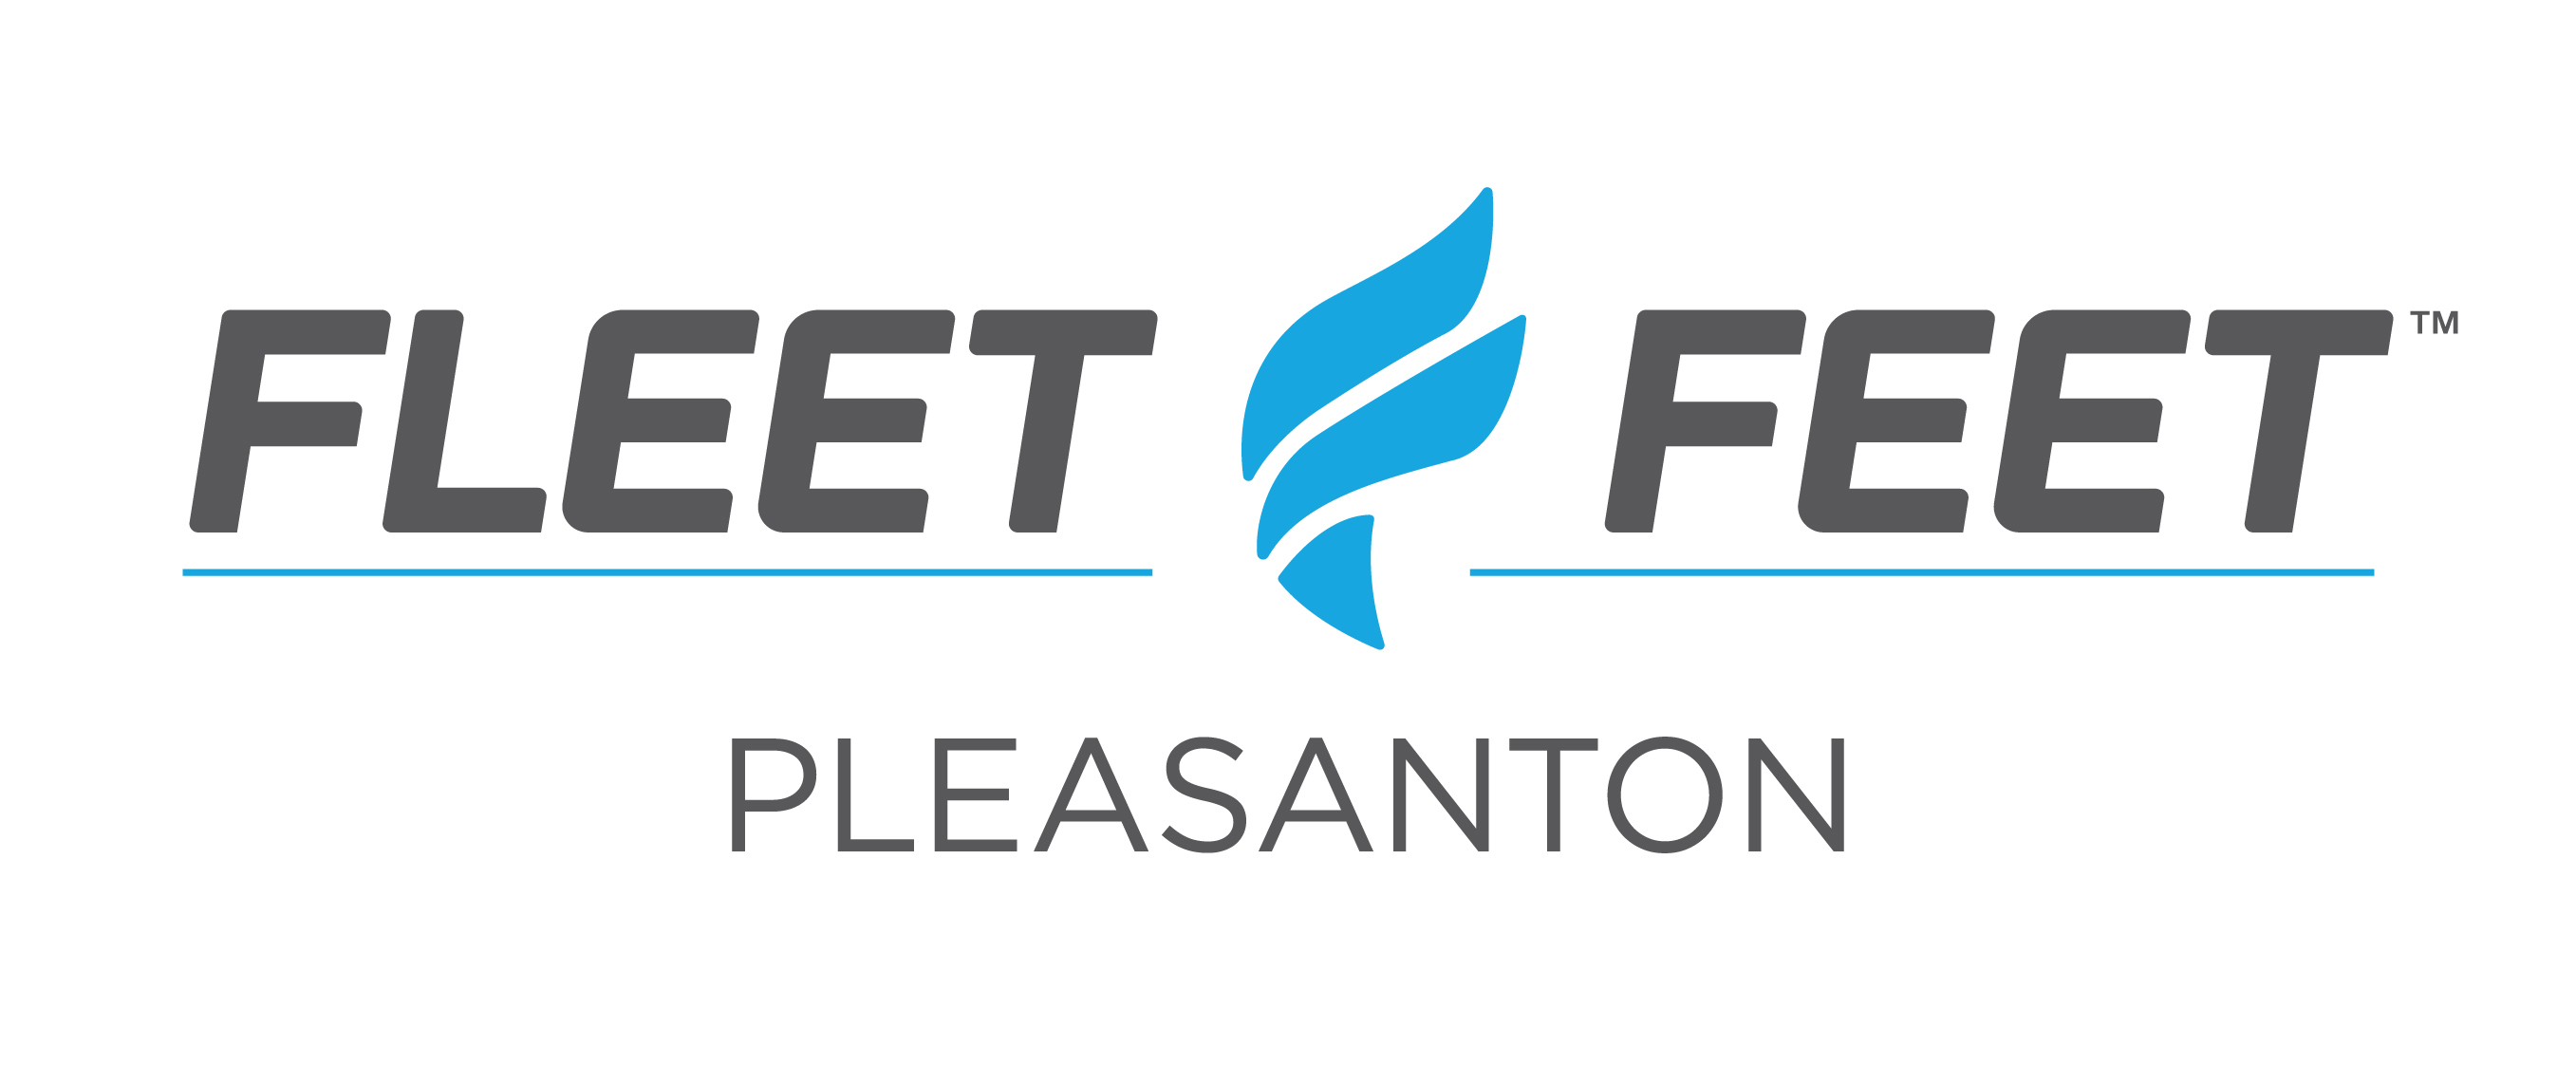 Fleet Feet Pleasanton